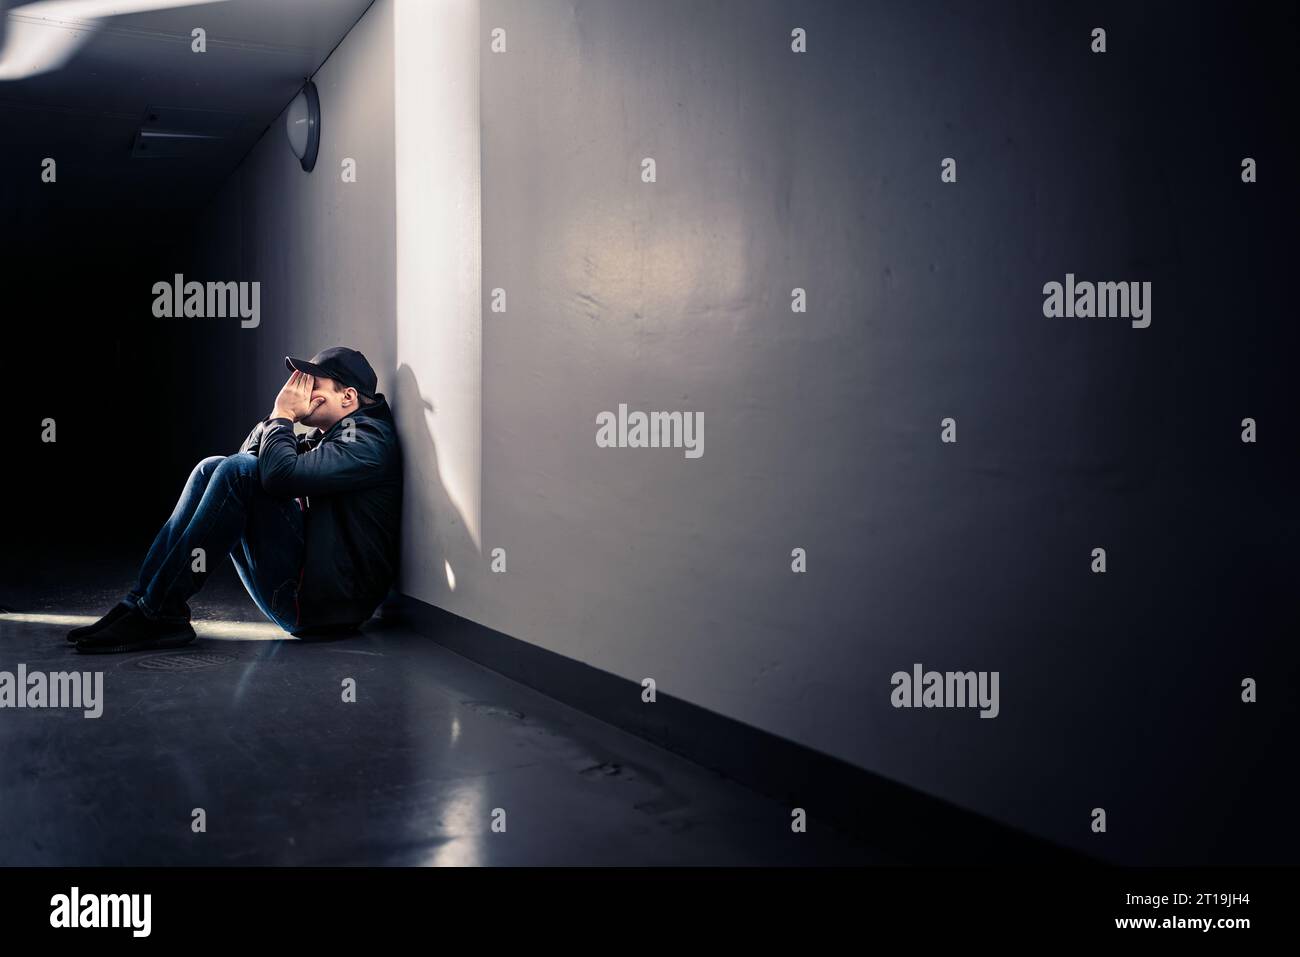 Trauriger Mann mit Trauma, der auf dem Boden sitzt. Schande, Schuld oder Trauer. Ein verzweifelter Kerl weint im dunklen Korridor. Opfer von Einsamkeit oder Diskriminierung. Stockfoto